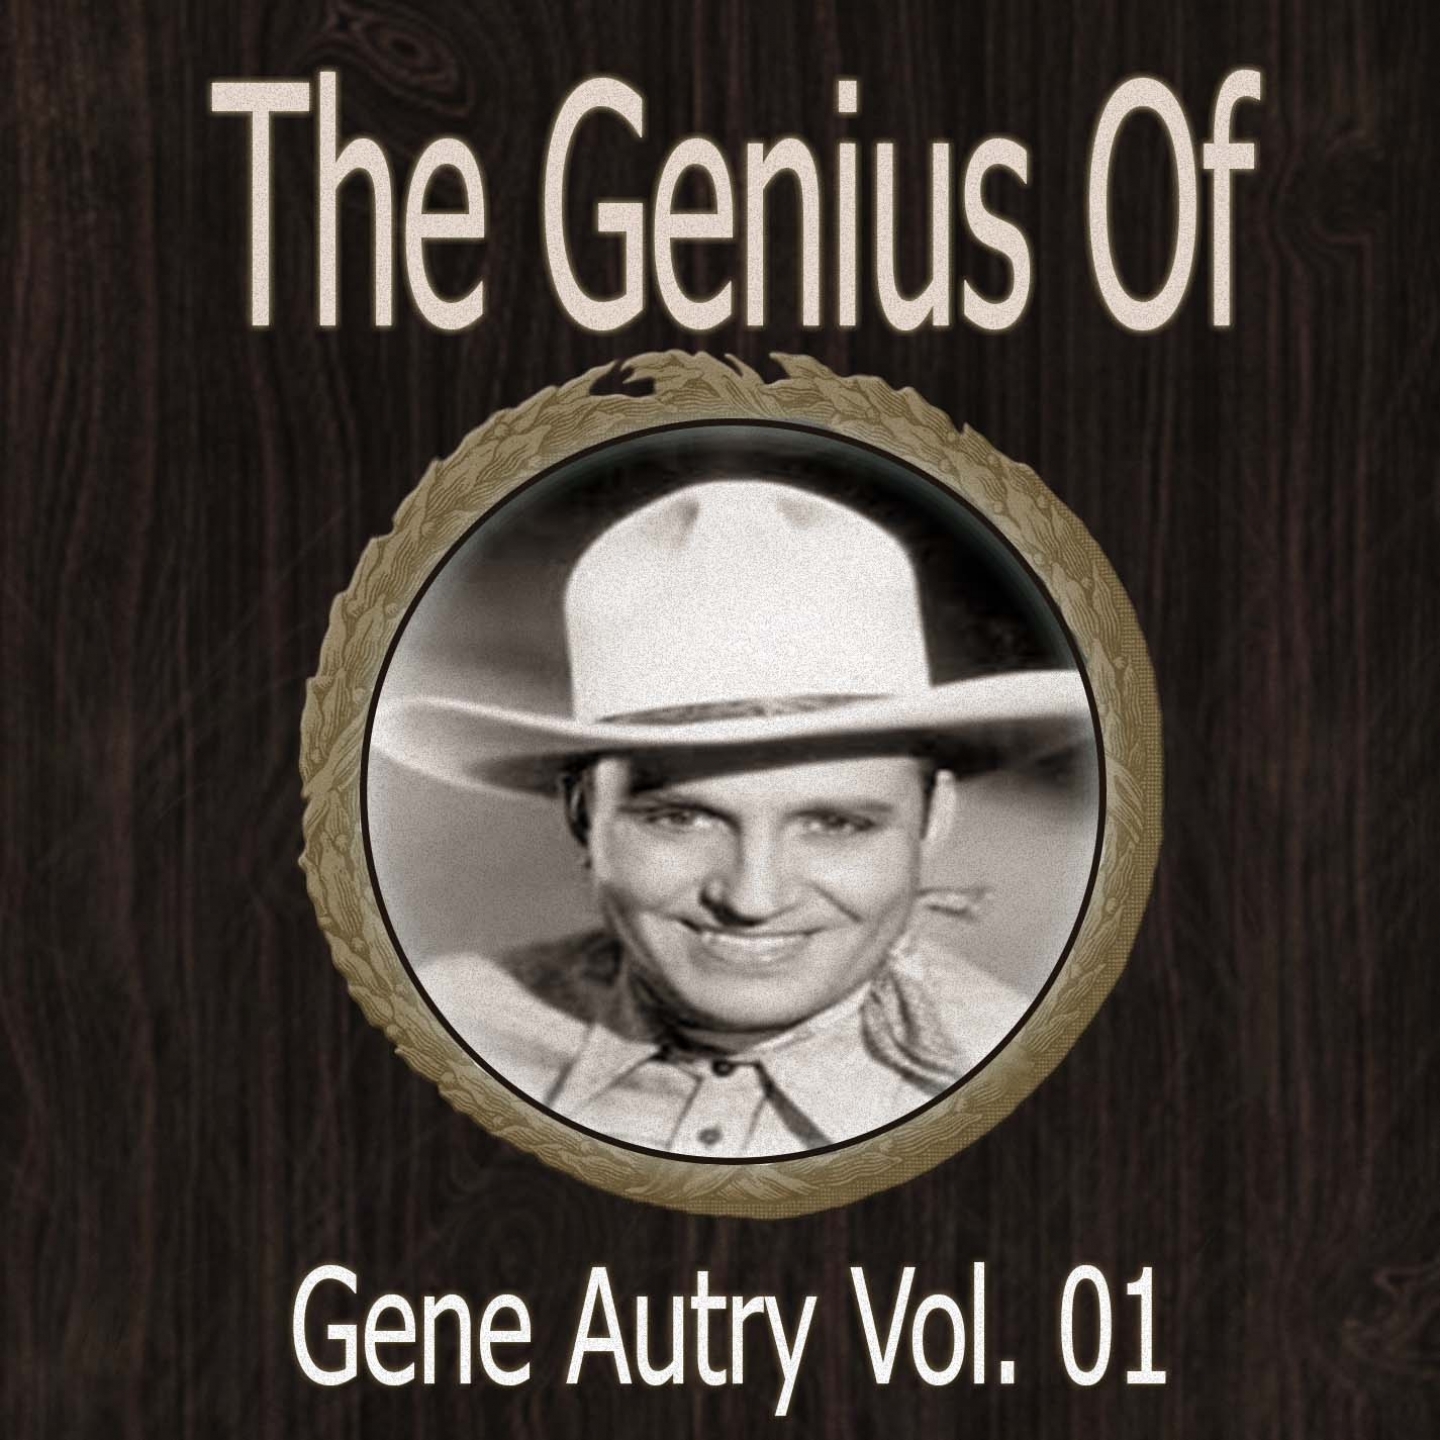 The Genius of Gene Autry Vol 01